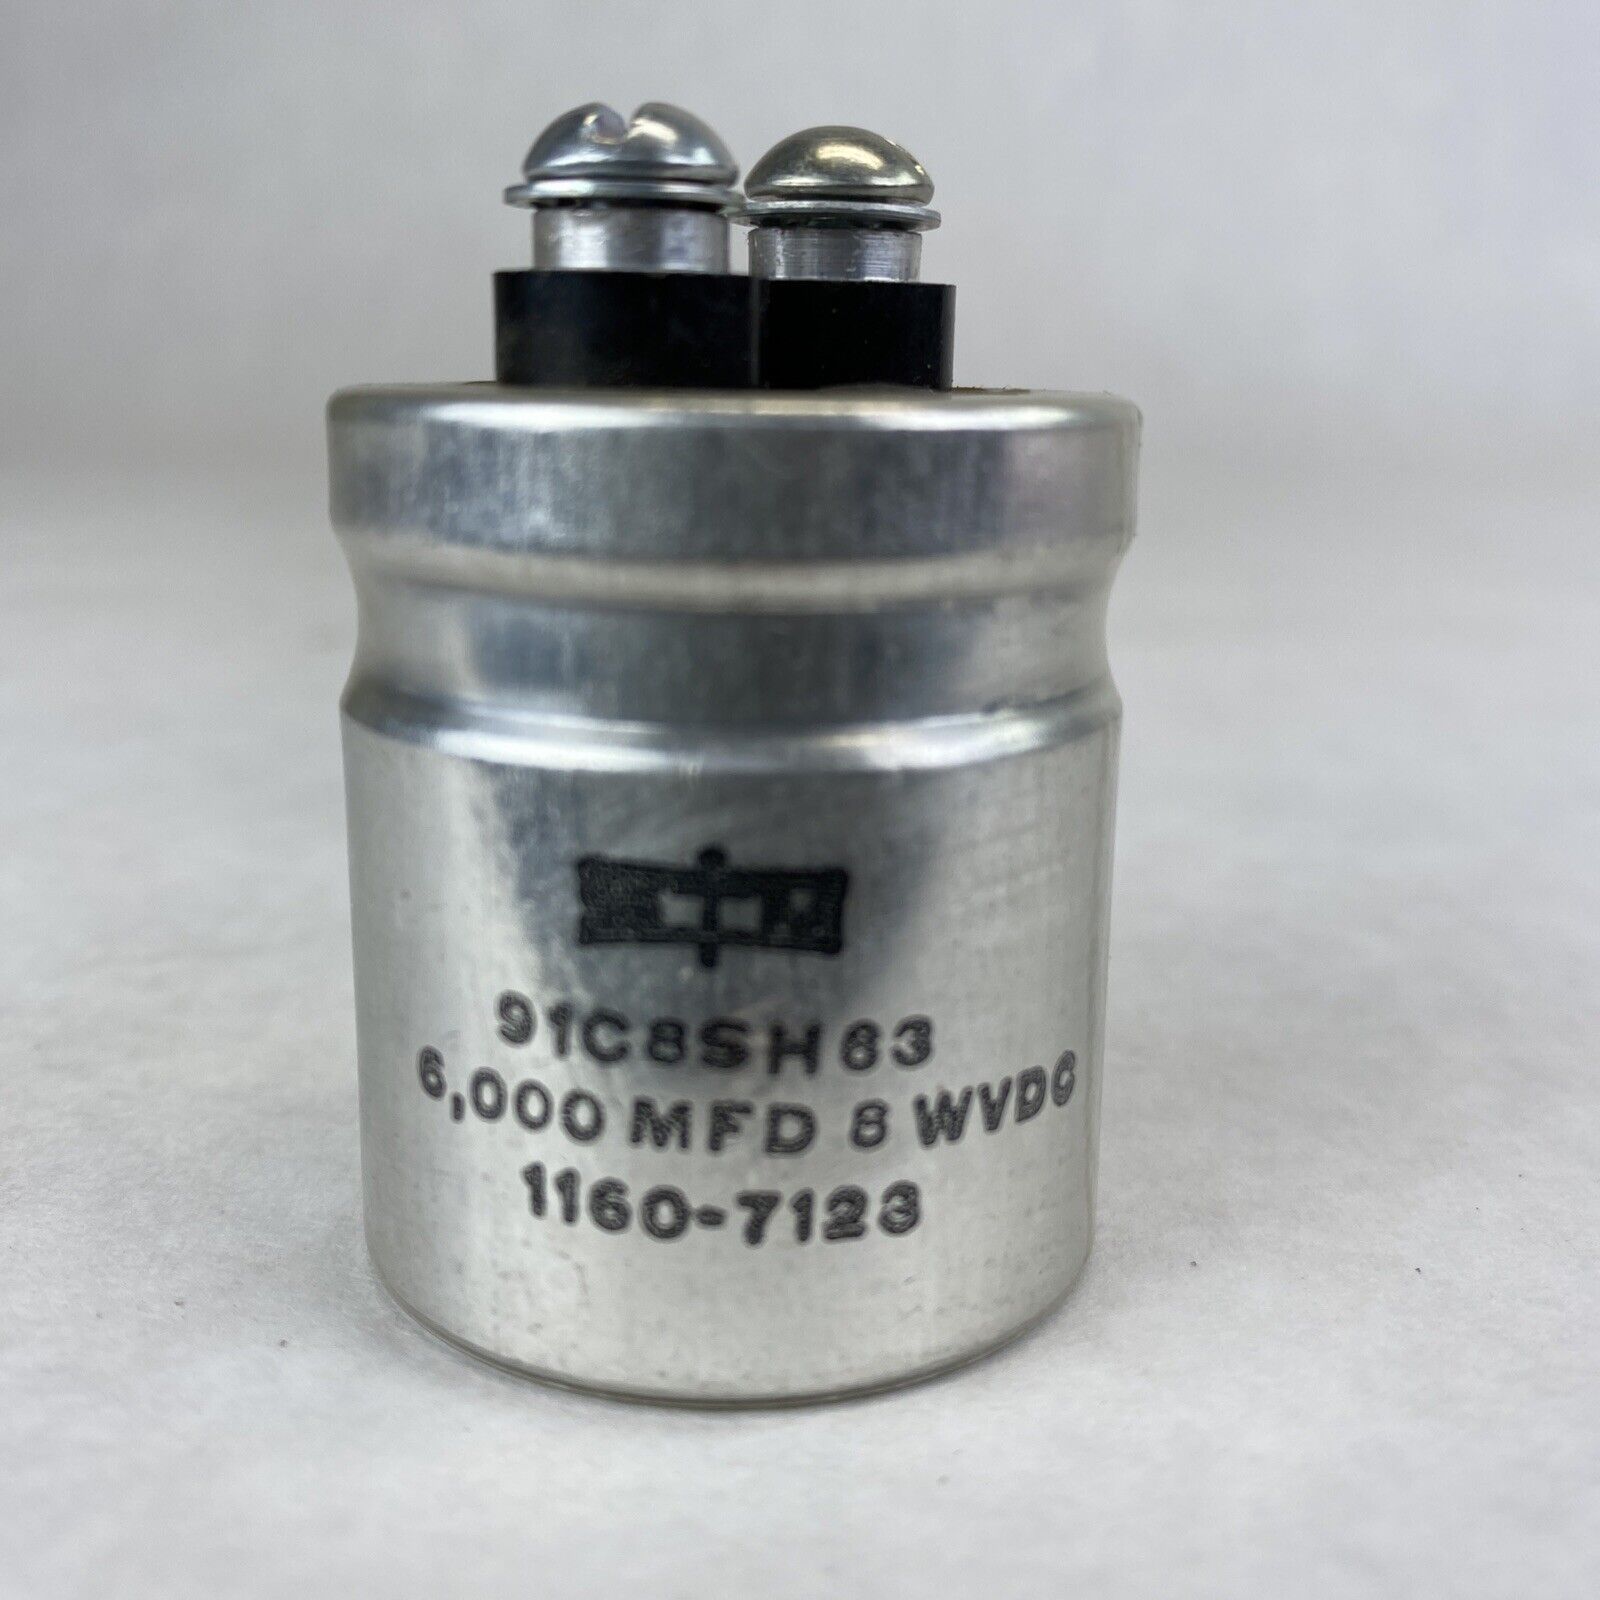 STM 1160-7123 Aluminum Capacitor 6000MFD 8VDC